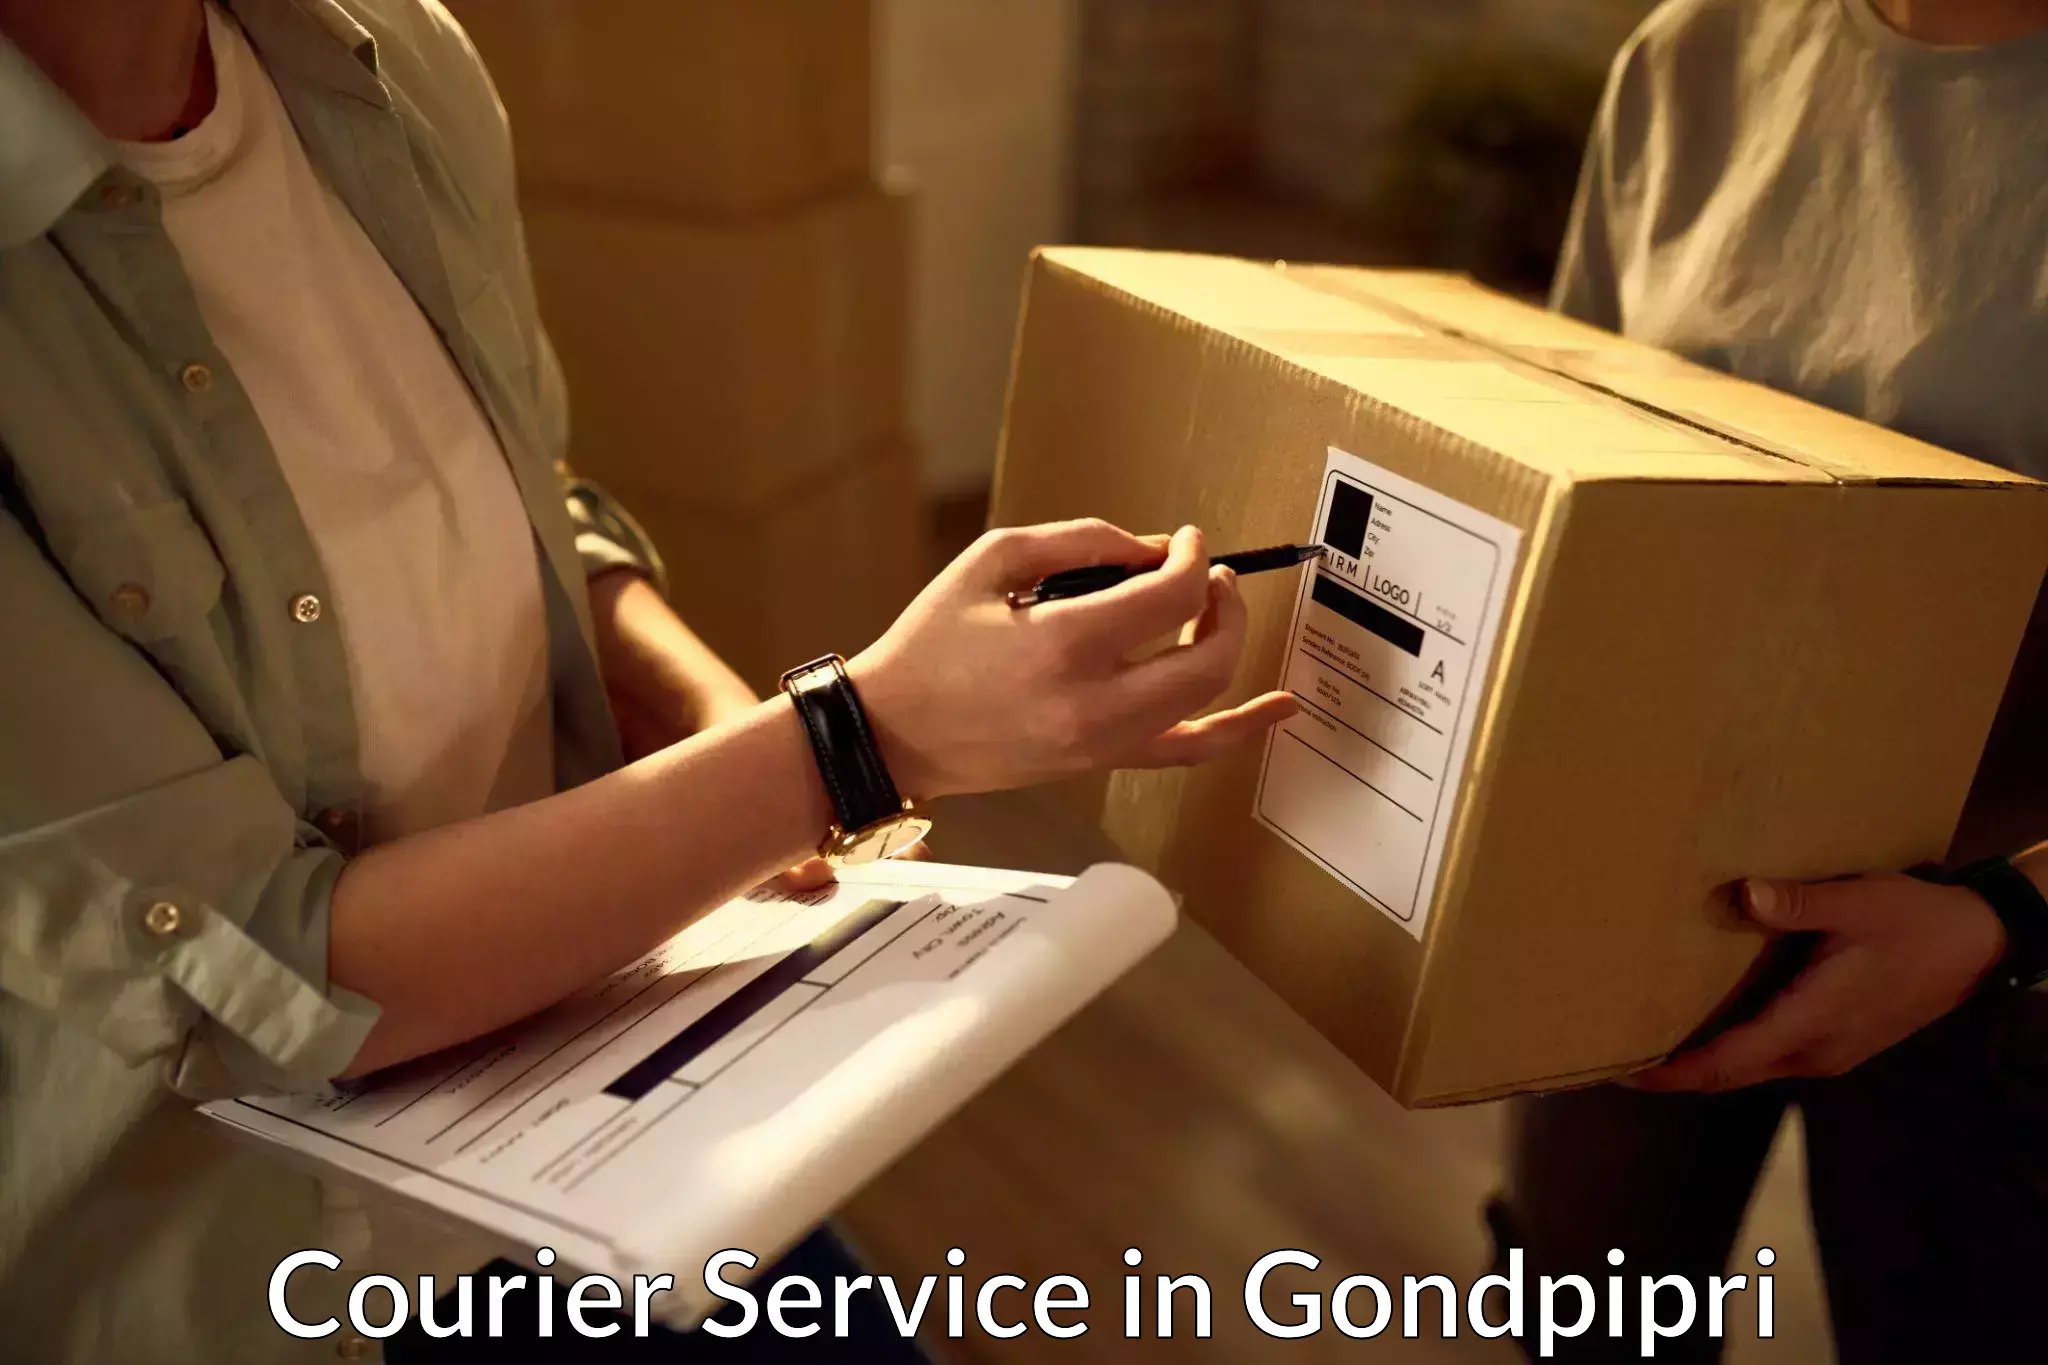 User-friendly delivery service in Gondpipri